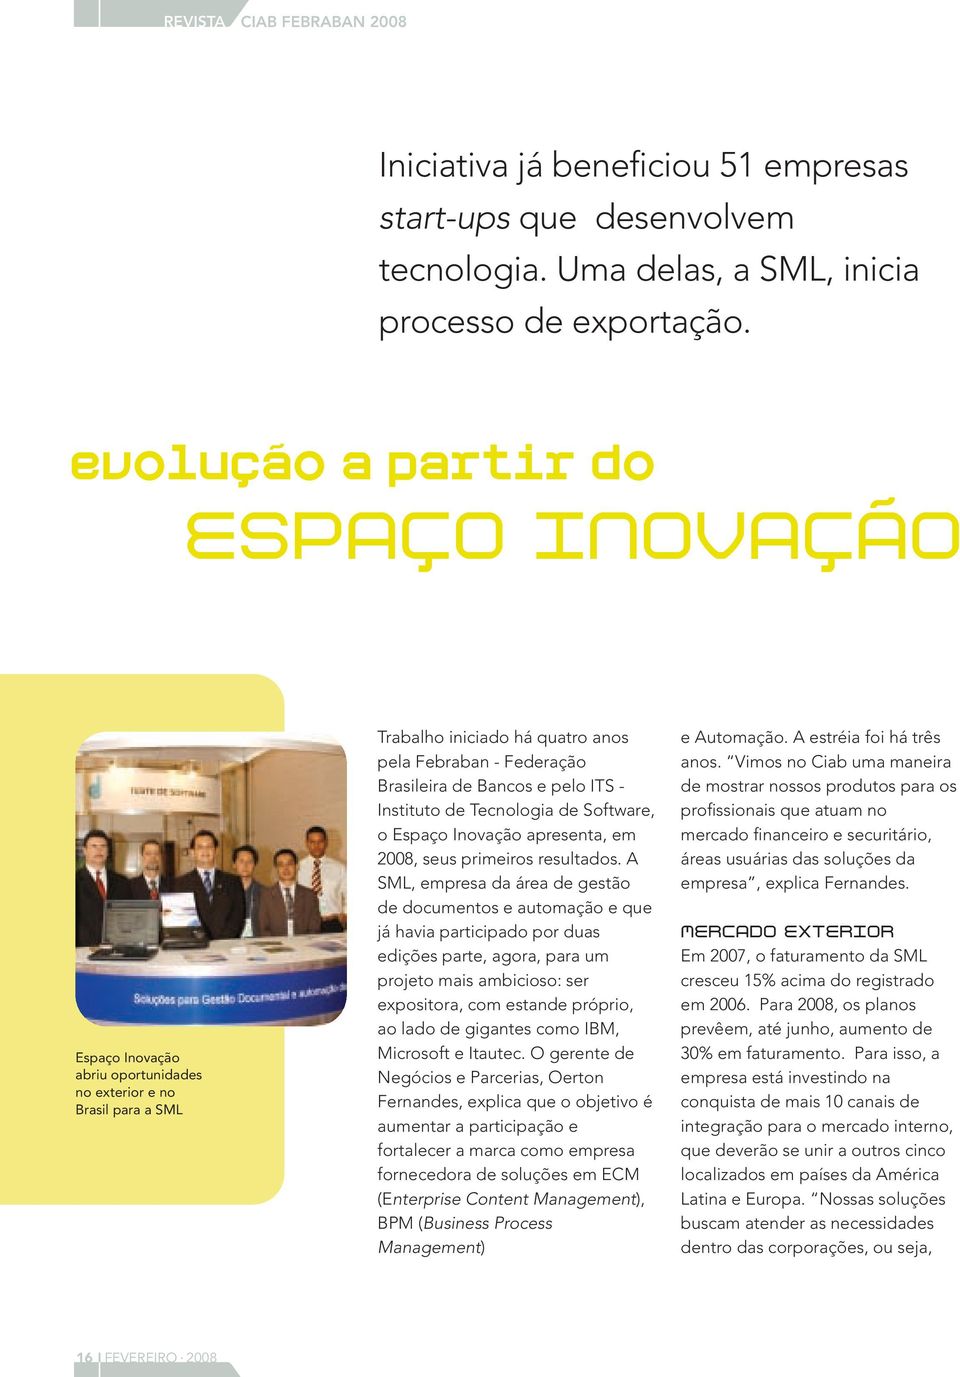 - Instituto de Tecnologia de Software, o Espaço Inovação apresenta, em 2008, seus primeiros resultados.